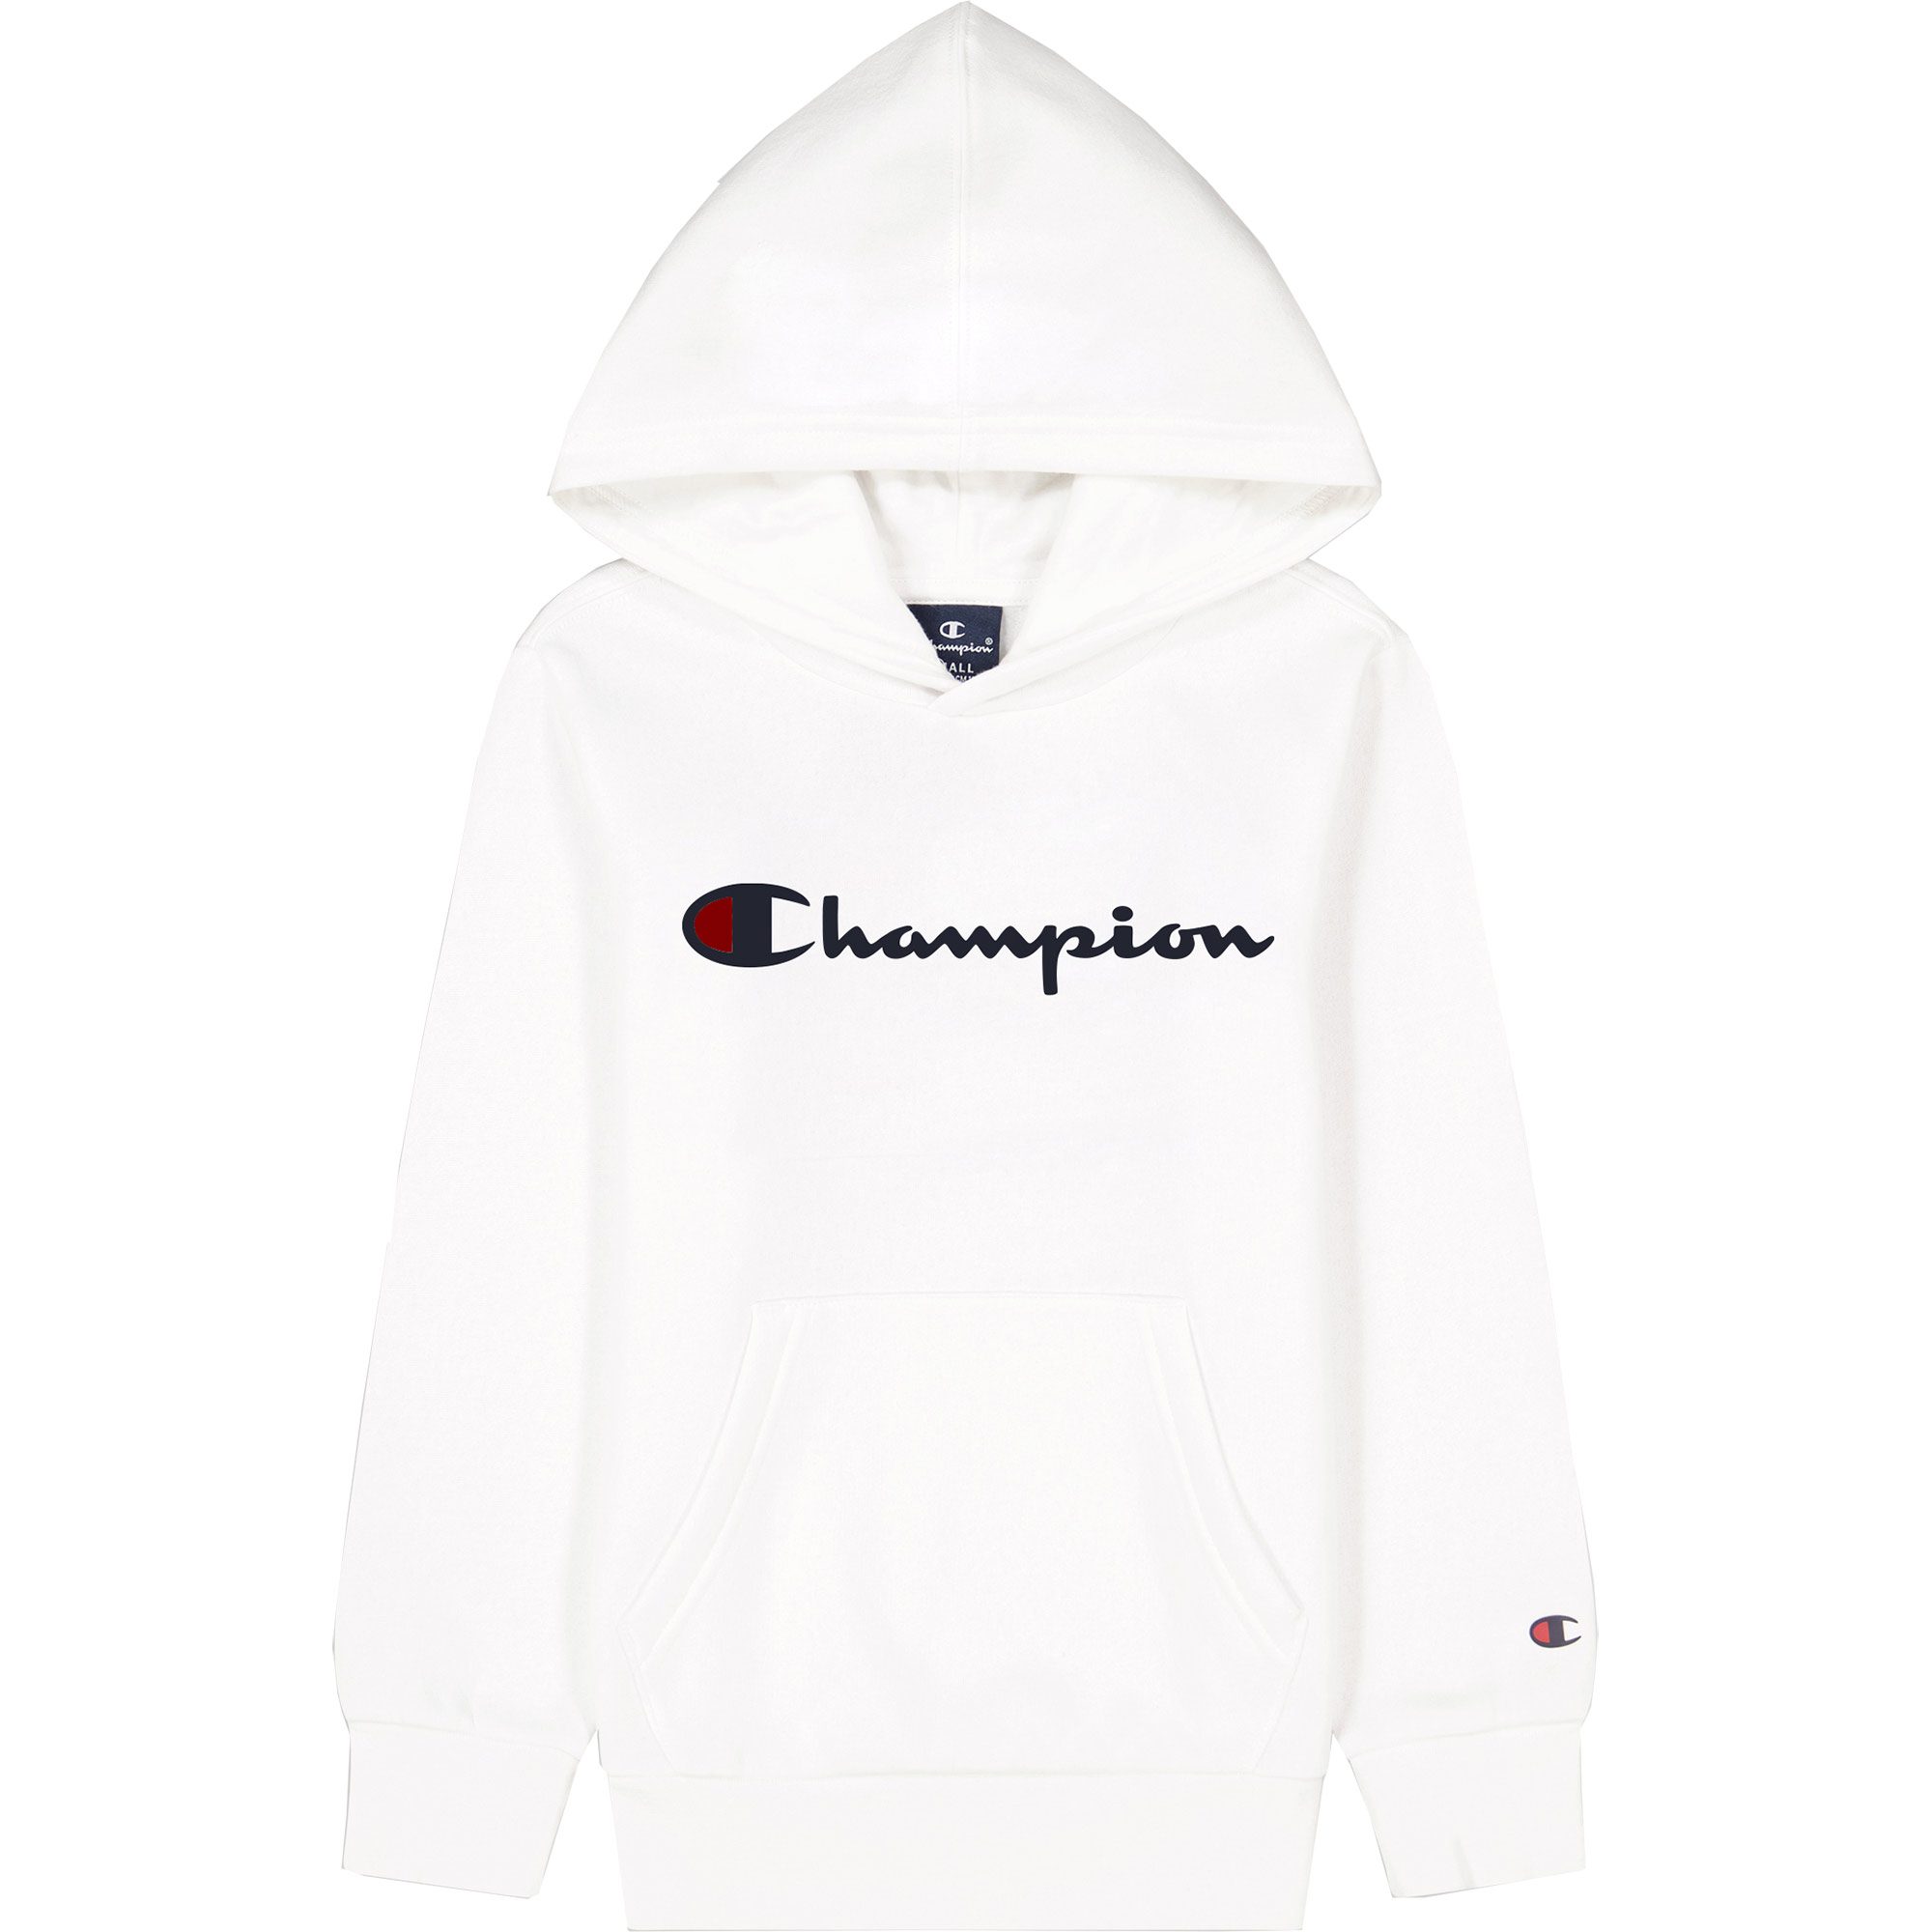 Champion - Hooded Sweatshirt Jungen weiß kaufen im Sport Bittl Shop